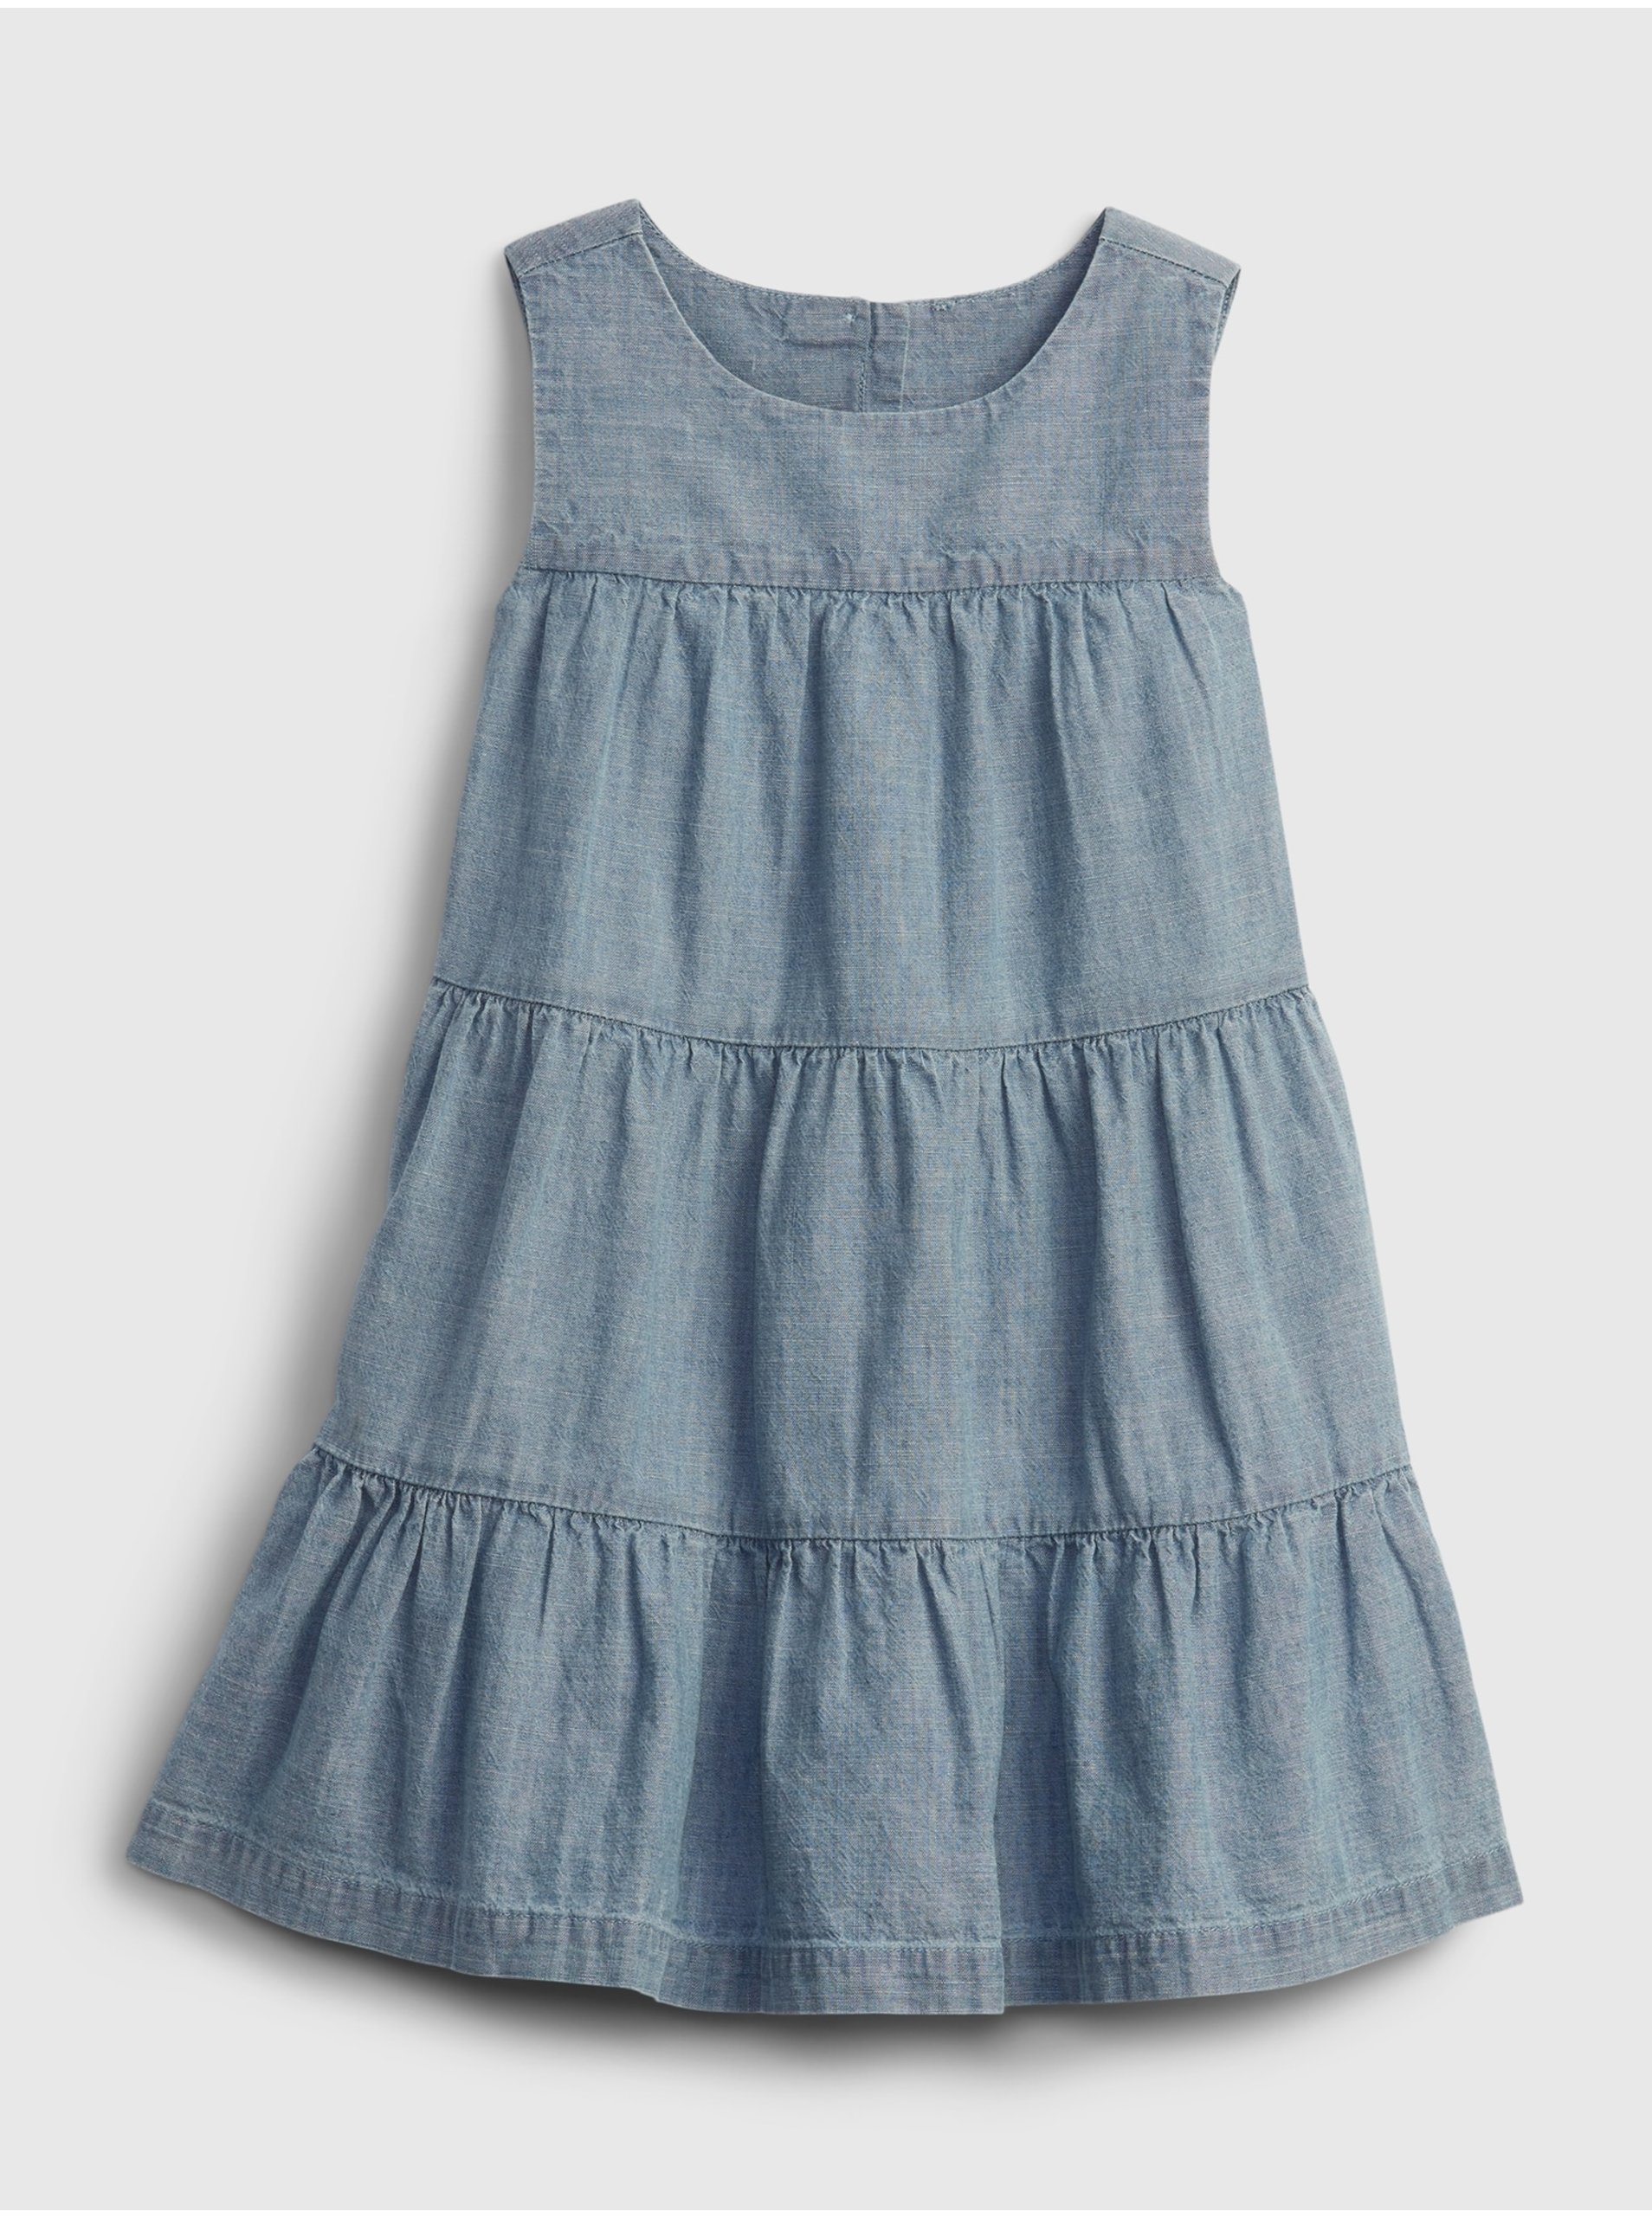 E-shop Modré holčičí dětské šaty tiered dress